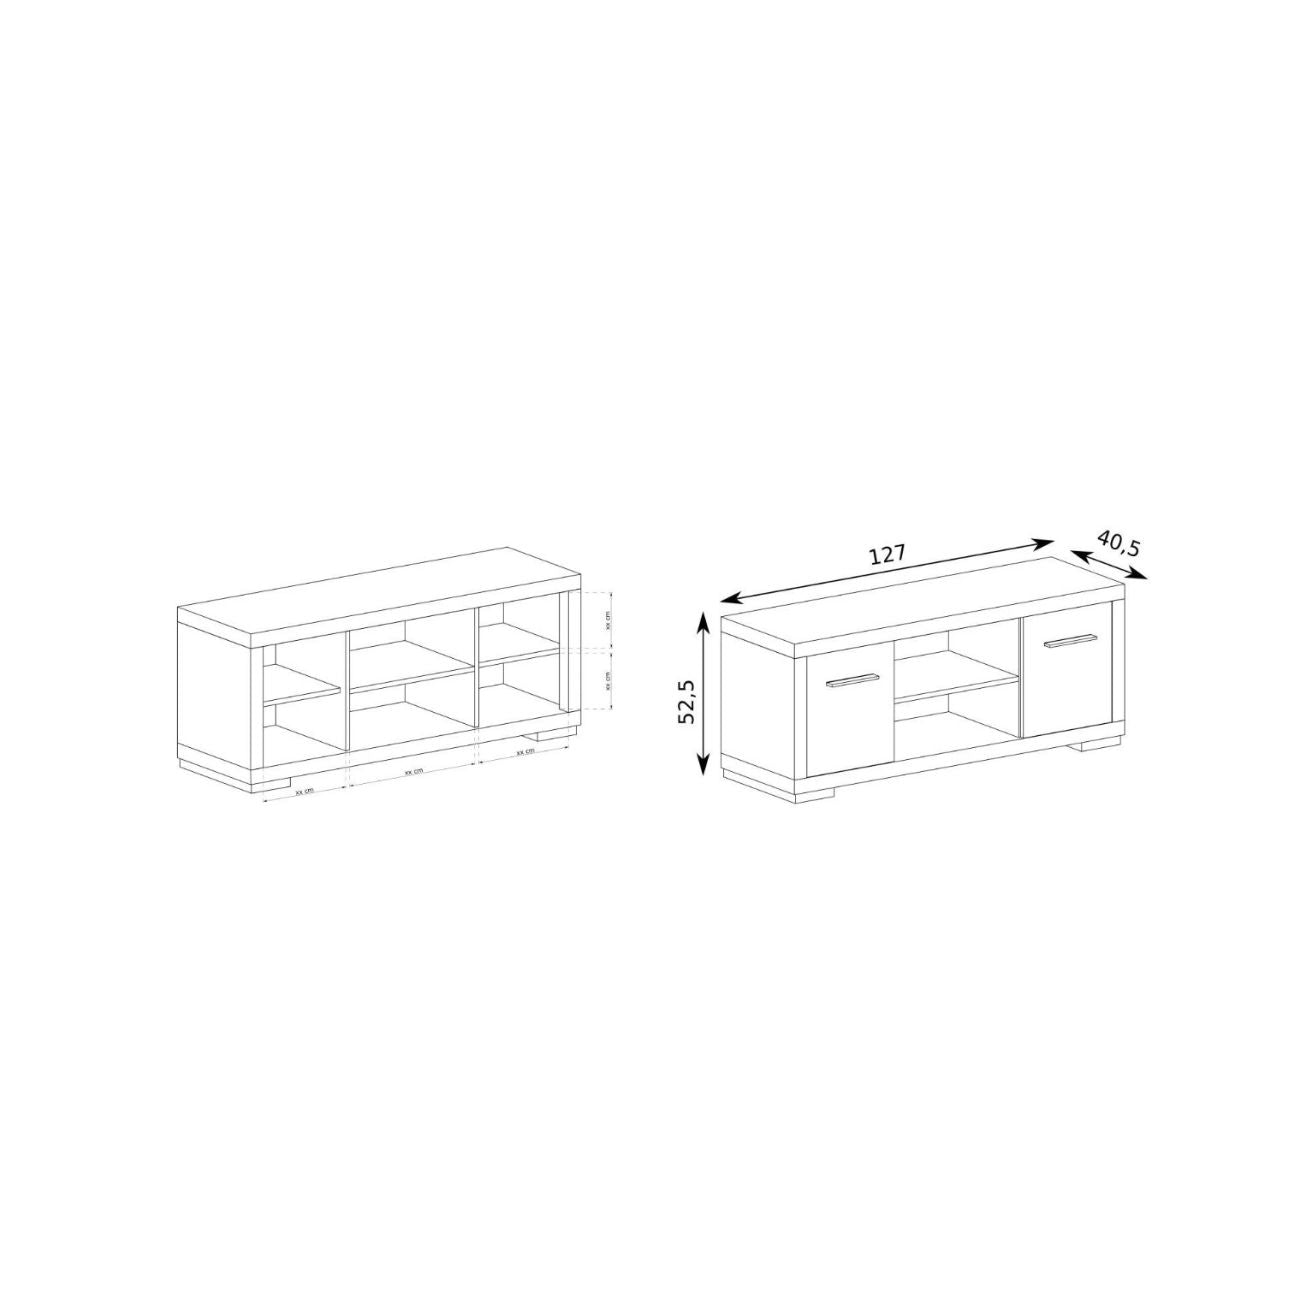 Rysunki przedstawiające wymiary oraz układ małej szafki RTV 2 fronty + otwarte półki SANTOS.